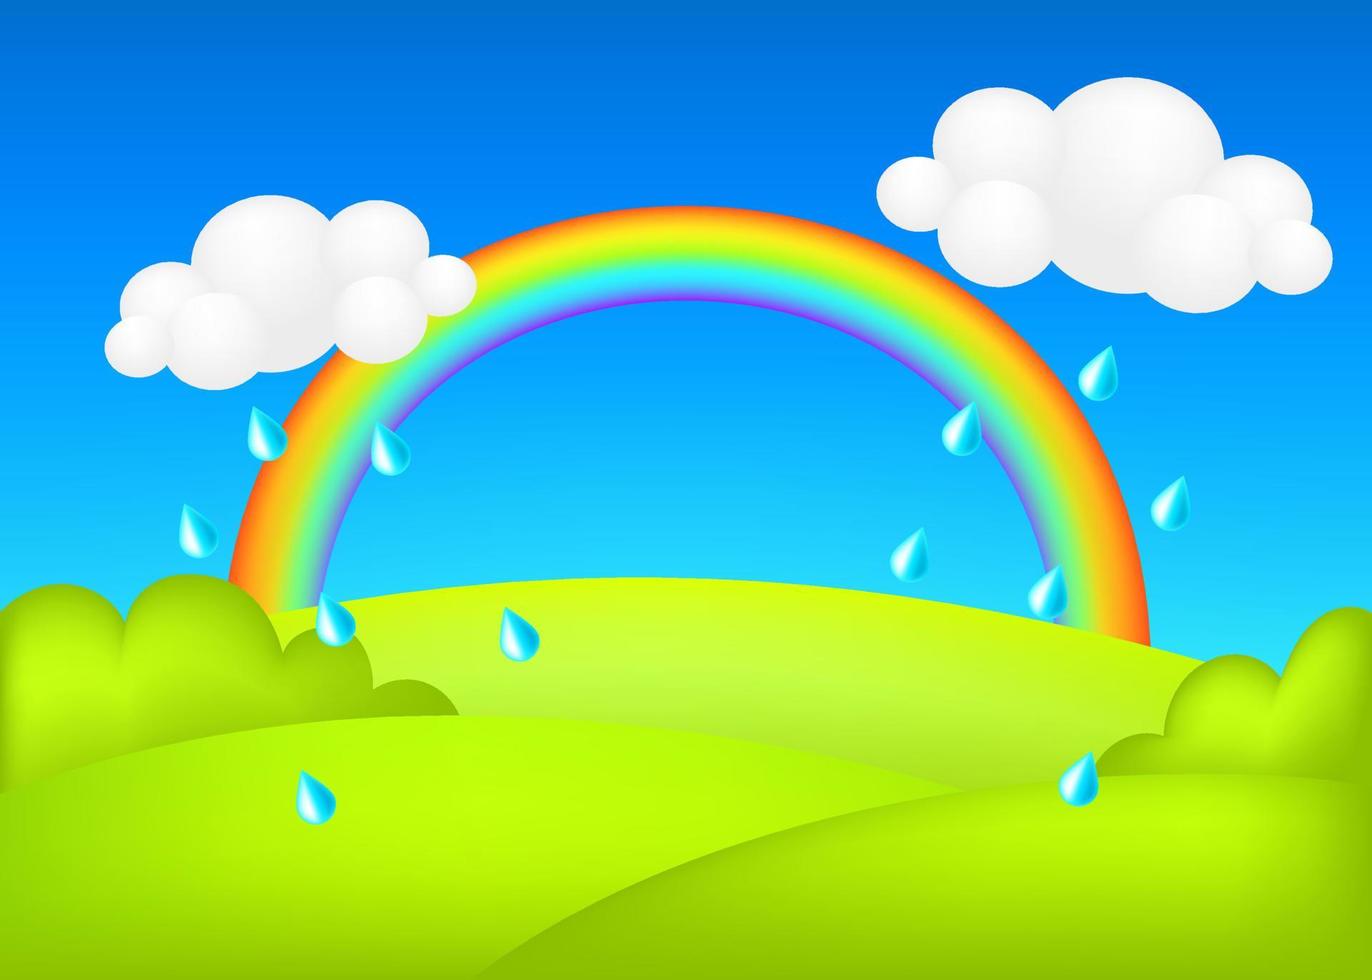 clima lluvioso en la ilustración de vector 3d de pradera. paisaje con arco iris en el fondo del pronóstico de los niños del valle verde. colorido paisaje lindo con gotas de lluvia, pradera verde primavera, cielo azul para los niños.